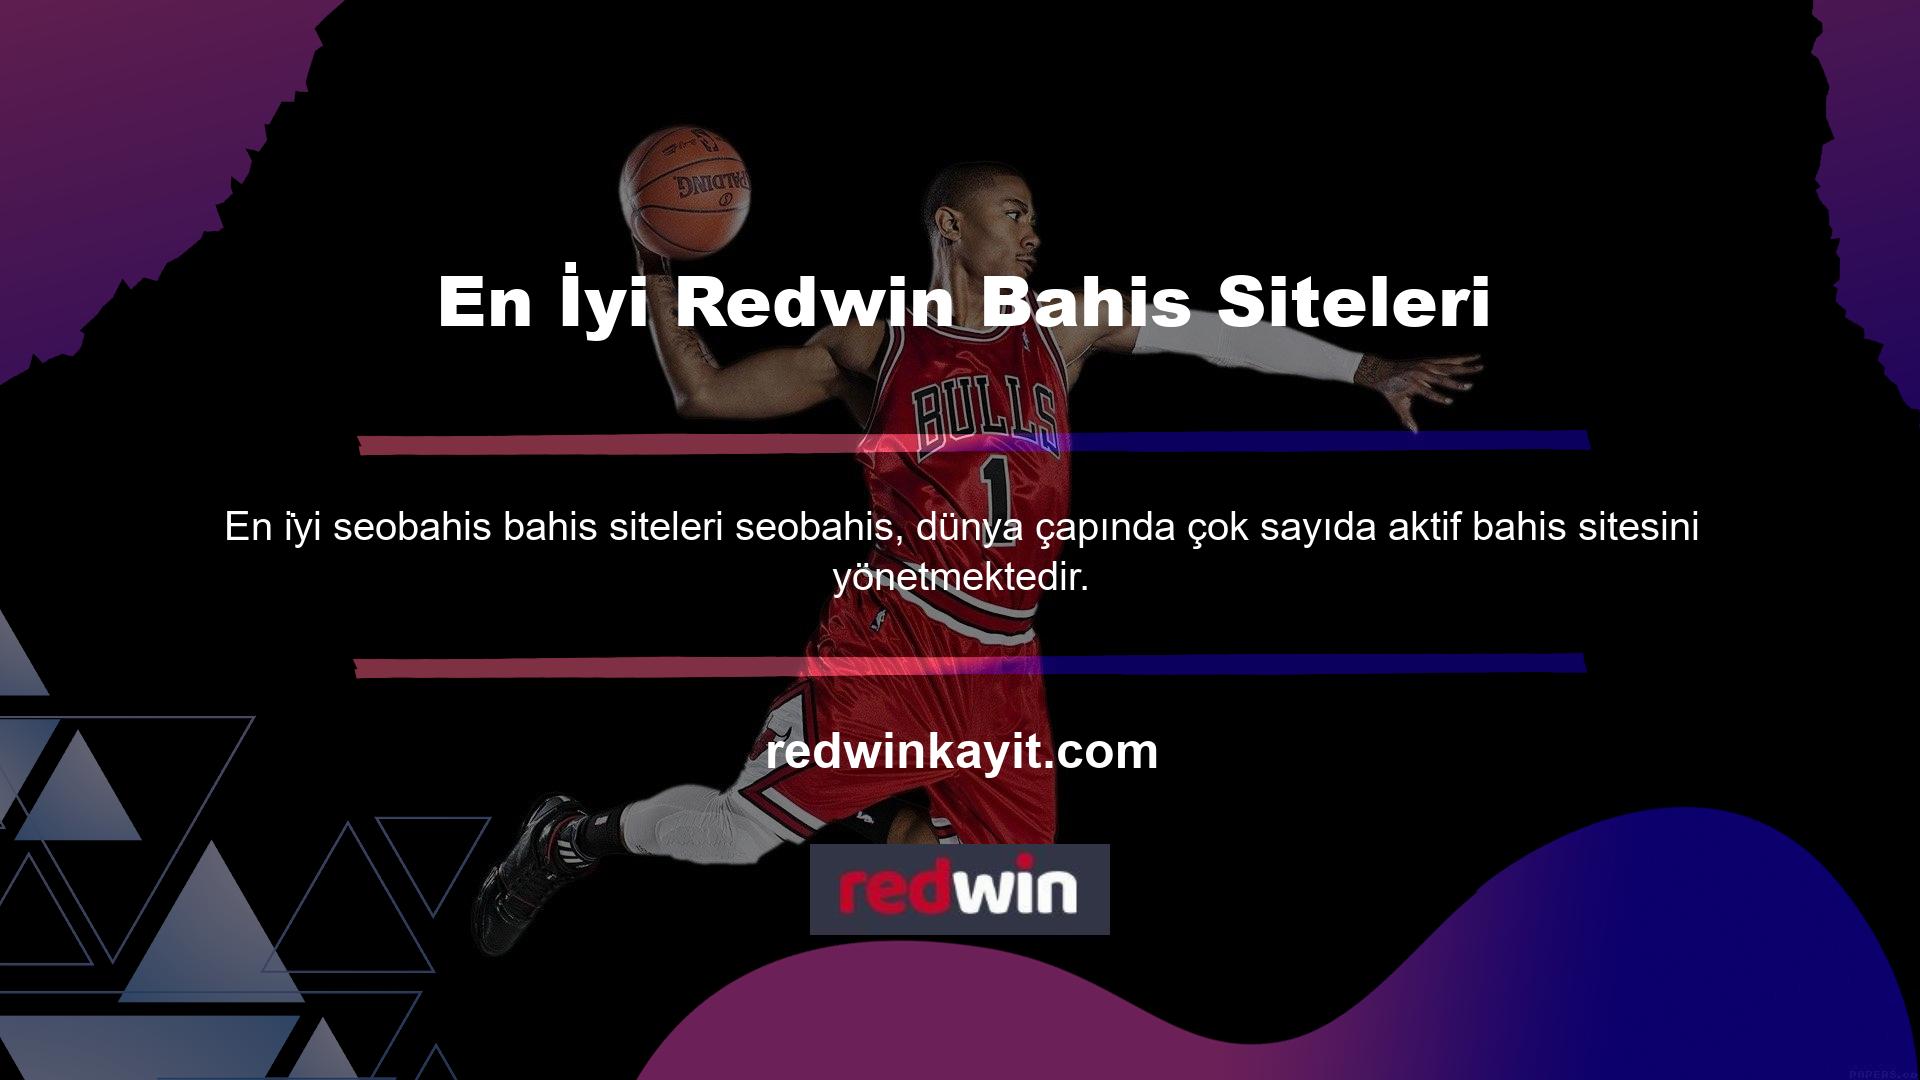 Redwin, Türkiye'nin yanı sıra dünya çapında da en saygın ve popüler bahis sitelerinden biridir